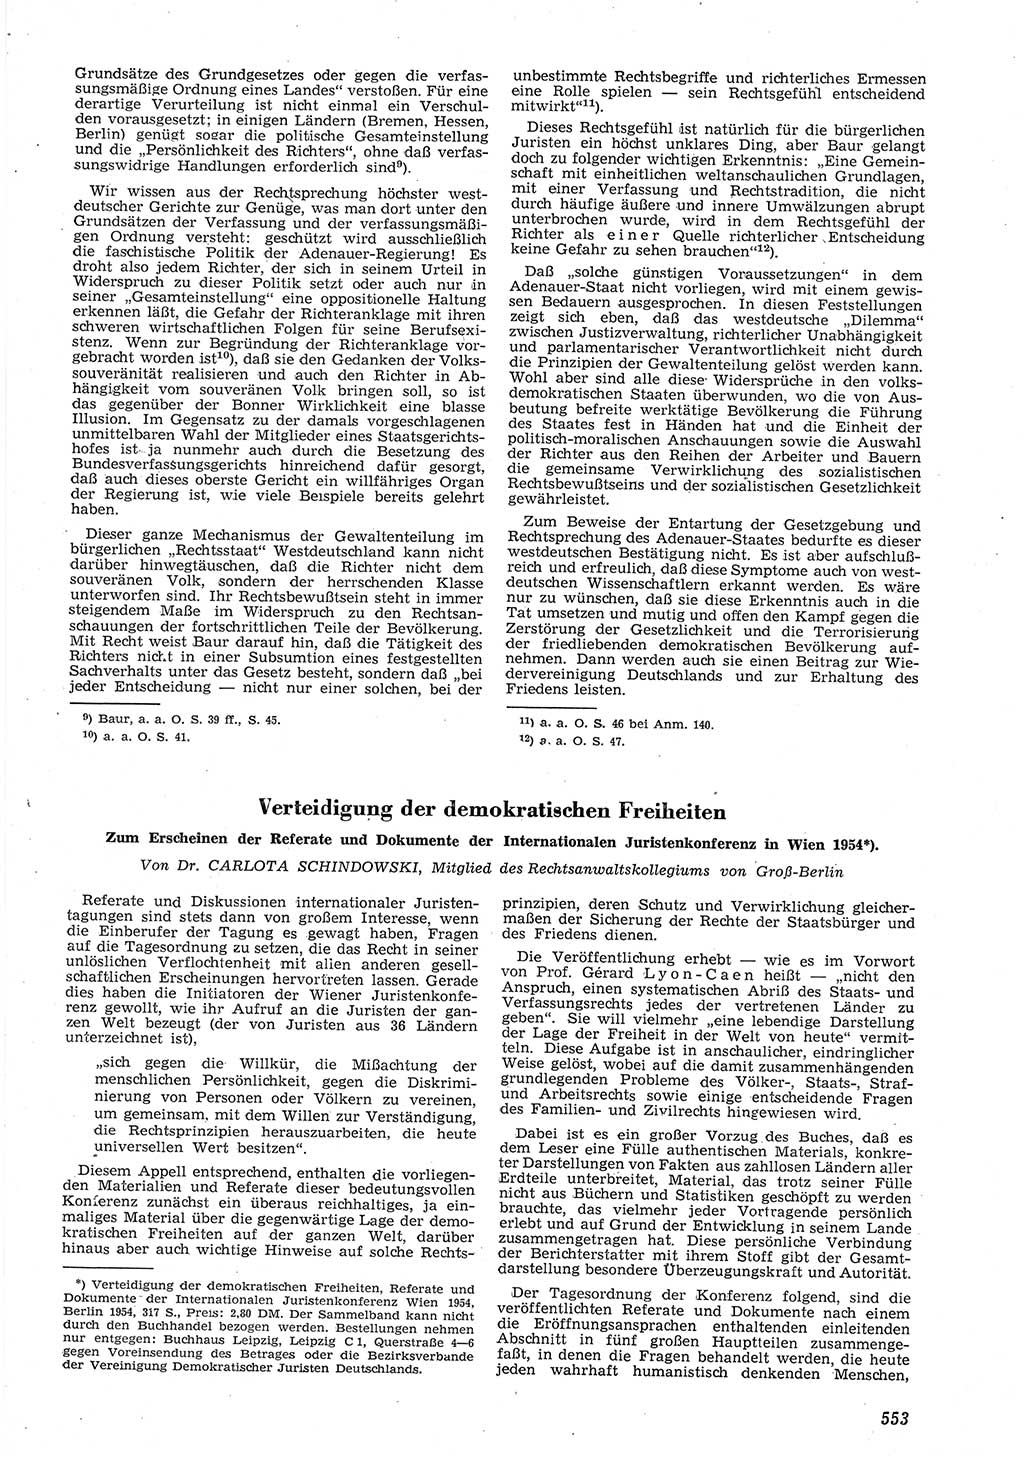 Neue Justiz (NJ), Zeitschrift für Recht und Rechtswissenschaft [Deutsche Demokratische Republik (DDR)], 8. Jahrgang 1954, Seite 553 (NJ DDR 1954, S. 553)